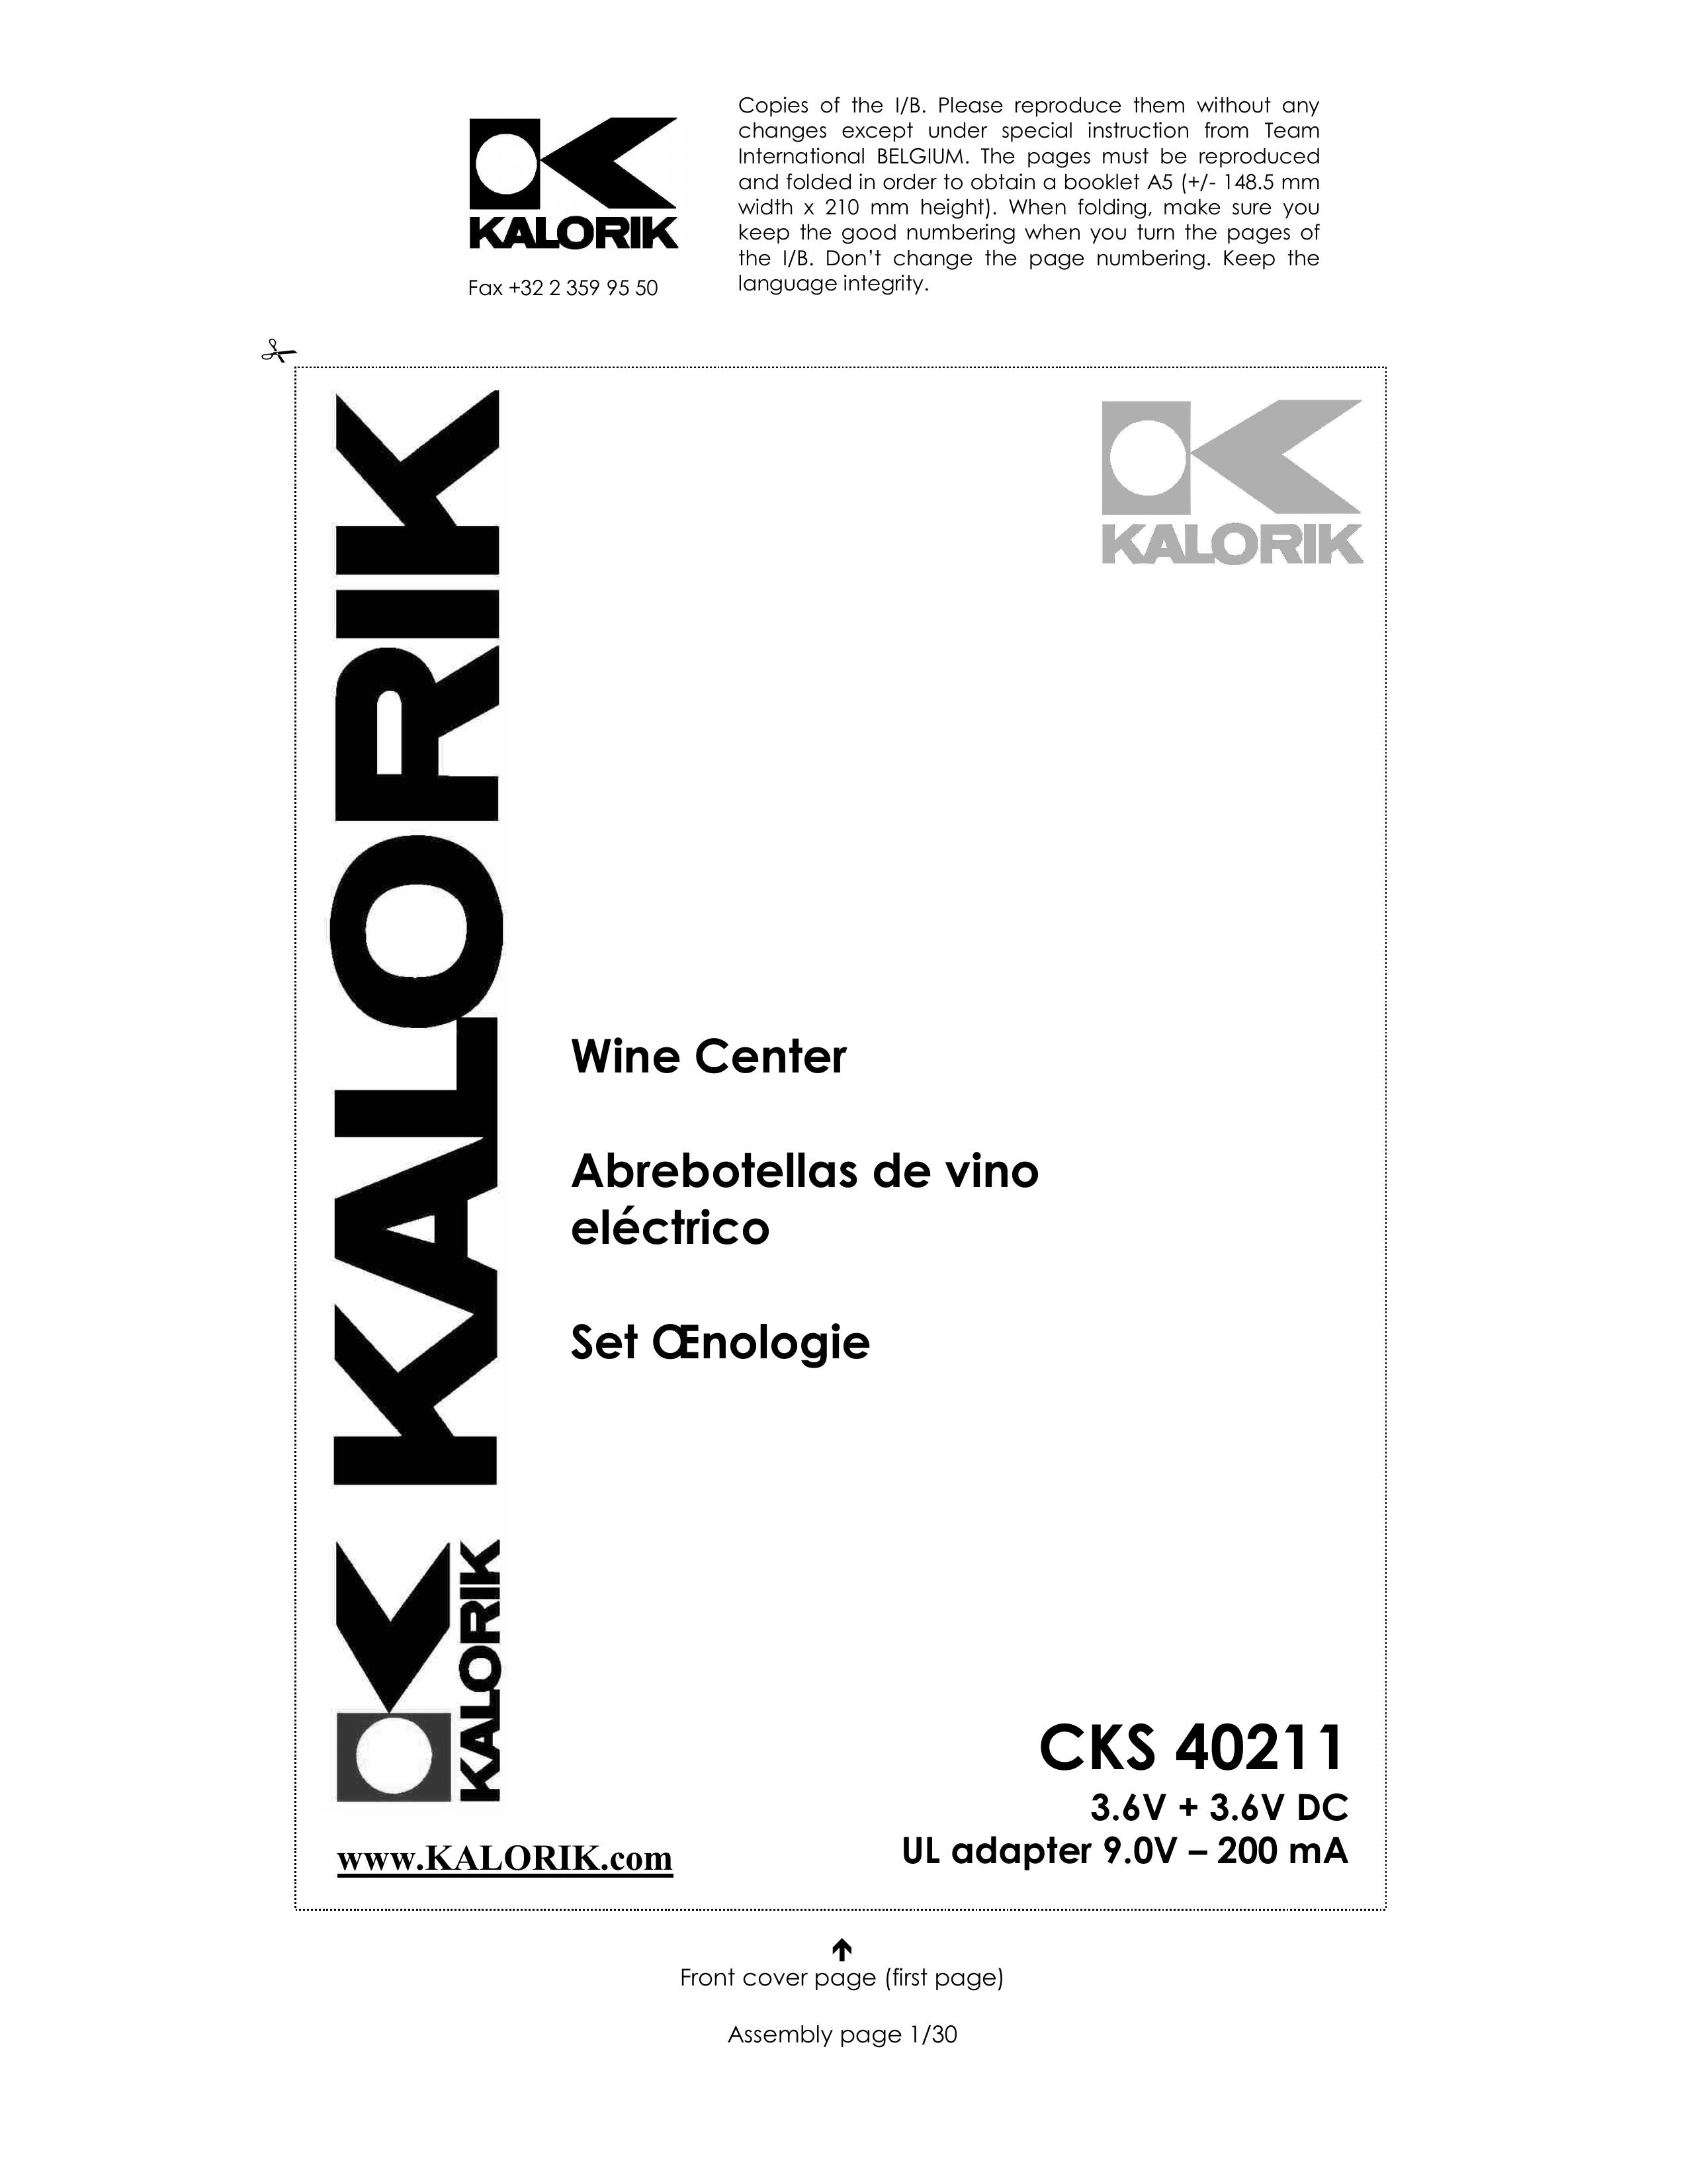 Kalorik CKS 40211 Refrigerator User Manual